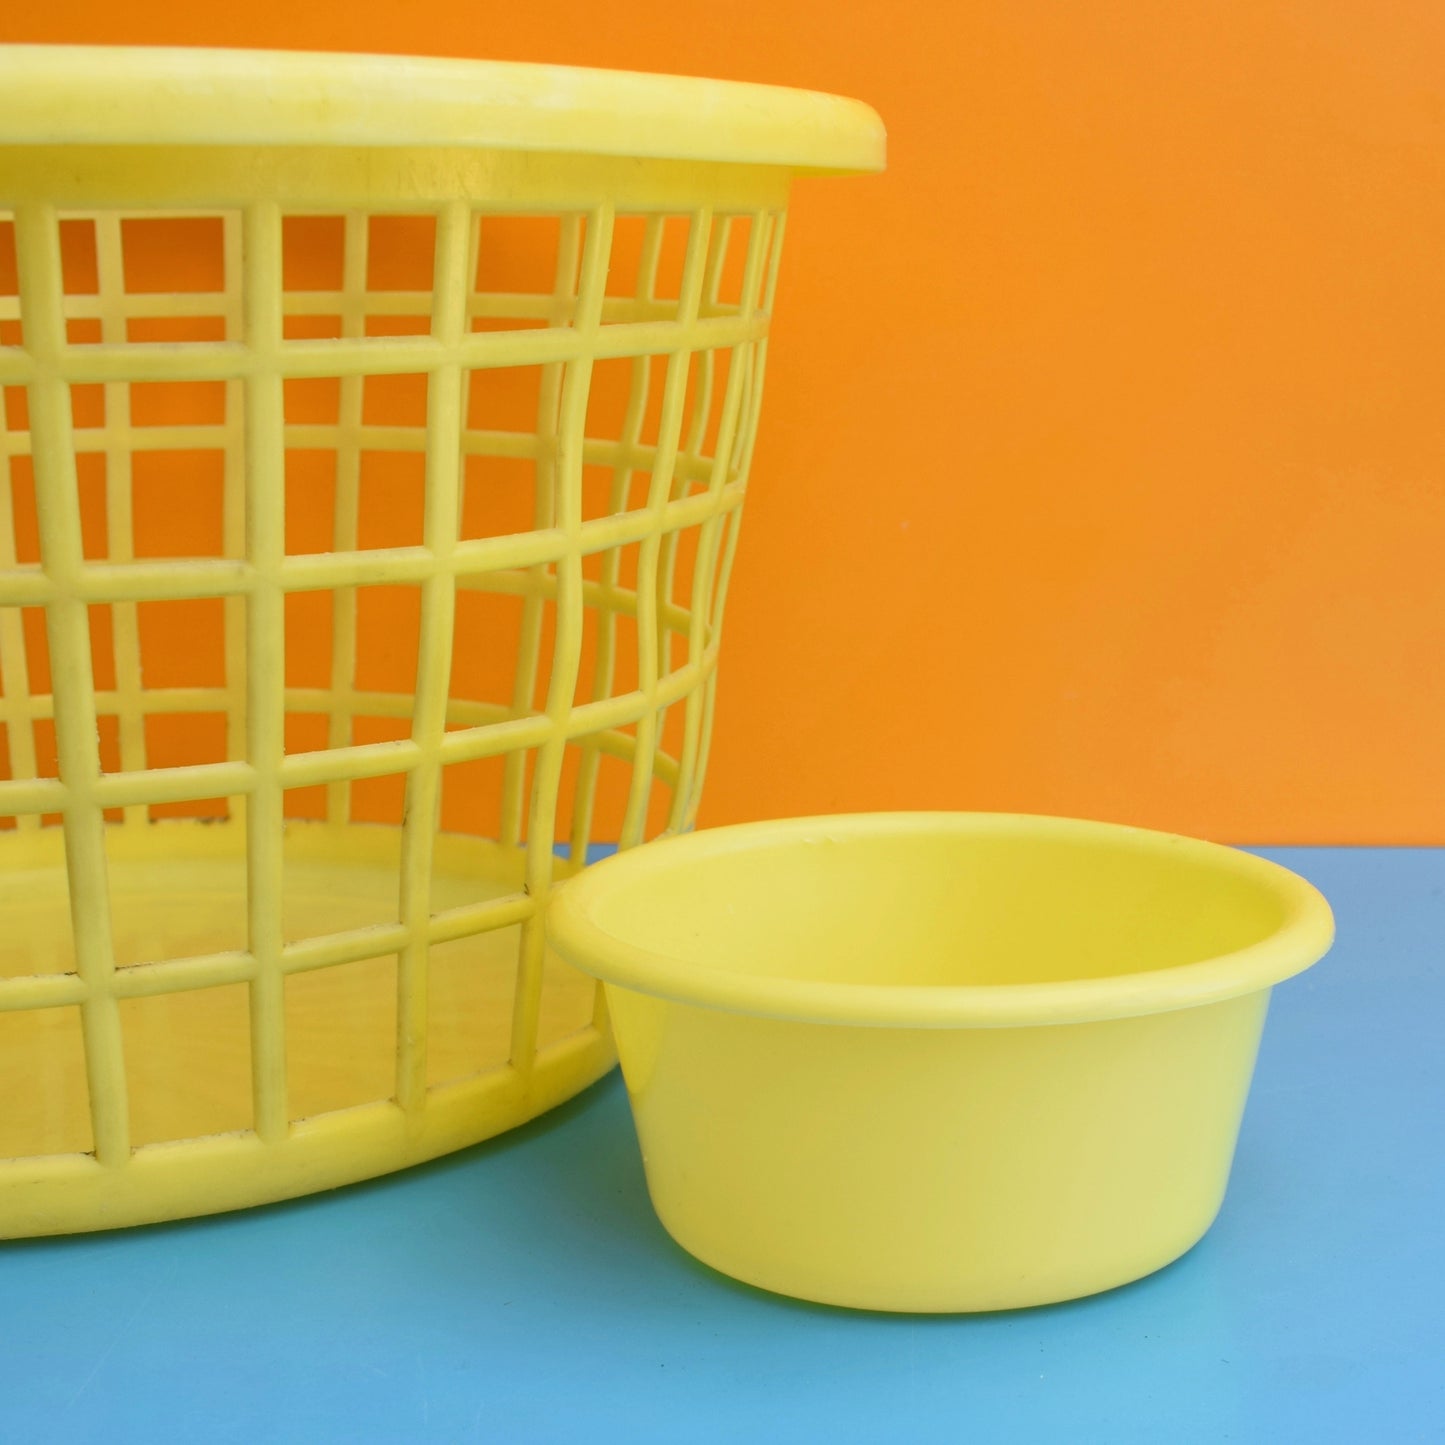 Vintage 1970s Washing Basket & Bowl - Yellow